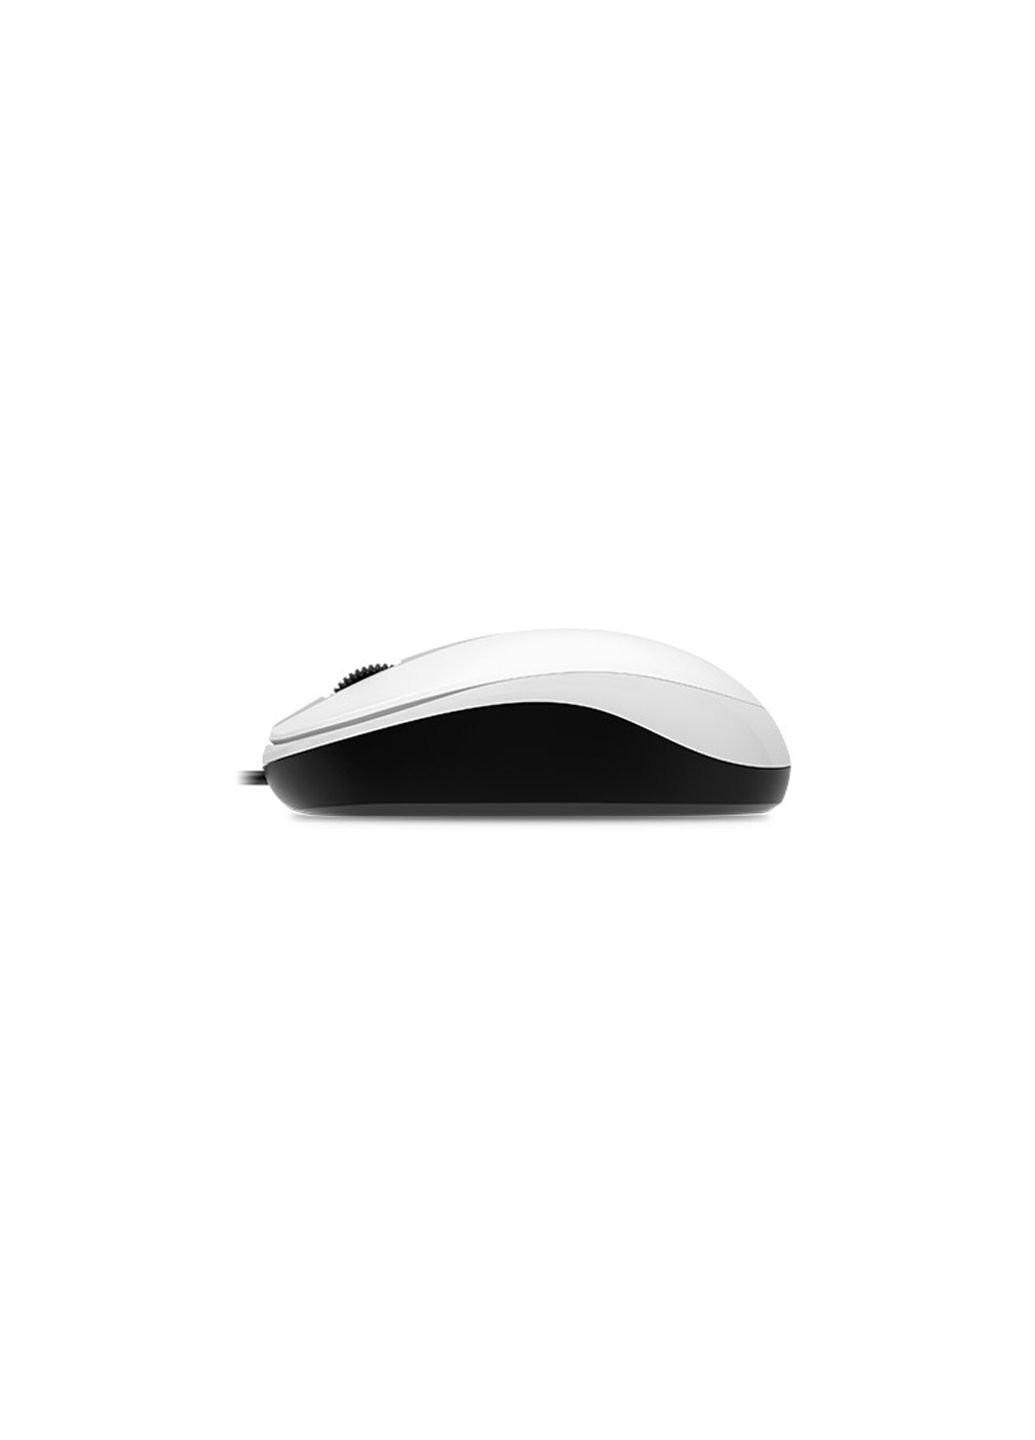 Мышка DX-120 USB White (31010105102) Genius (253546055)